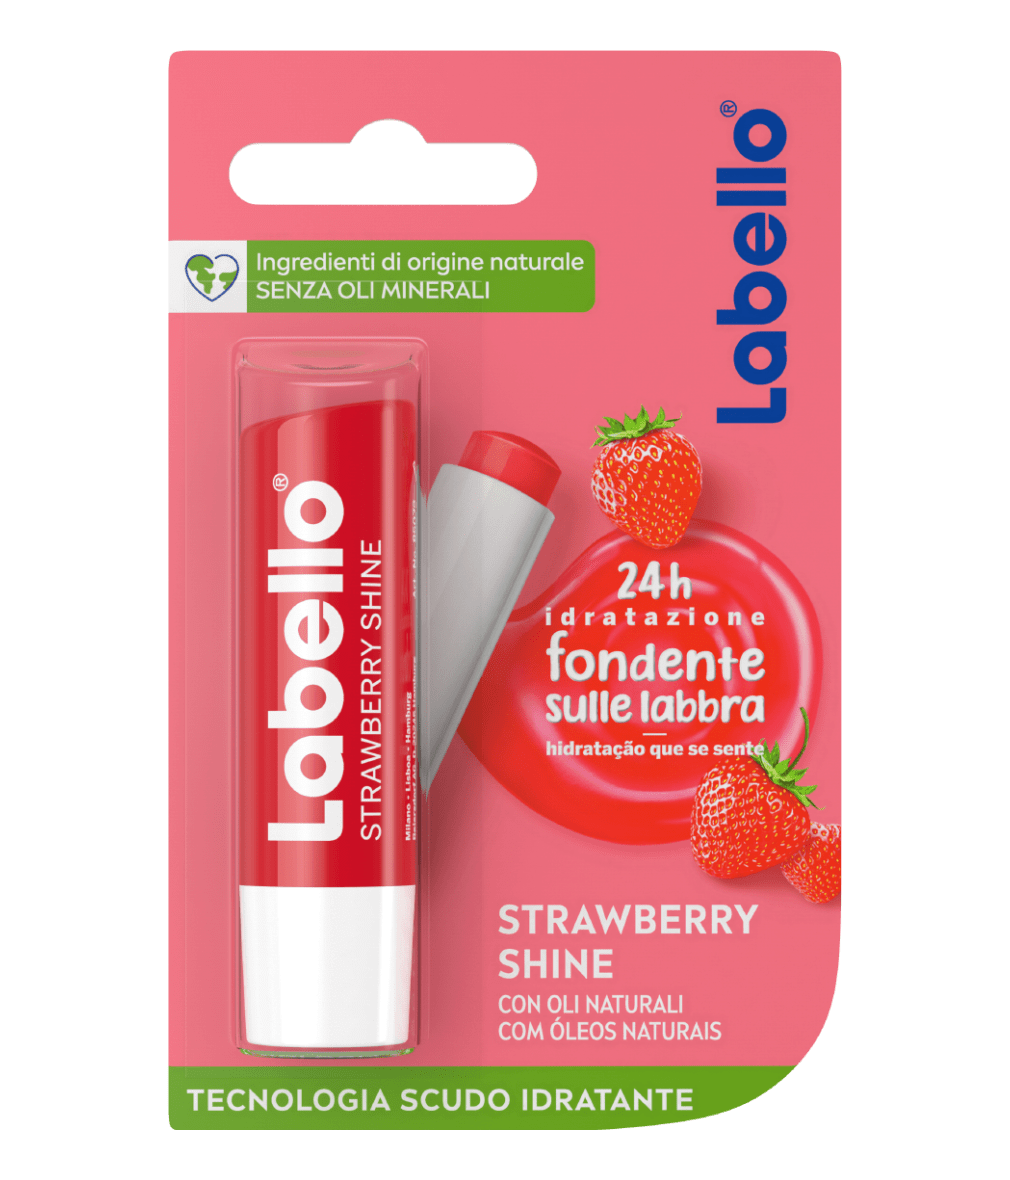 Labello Strawberry Shine